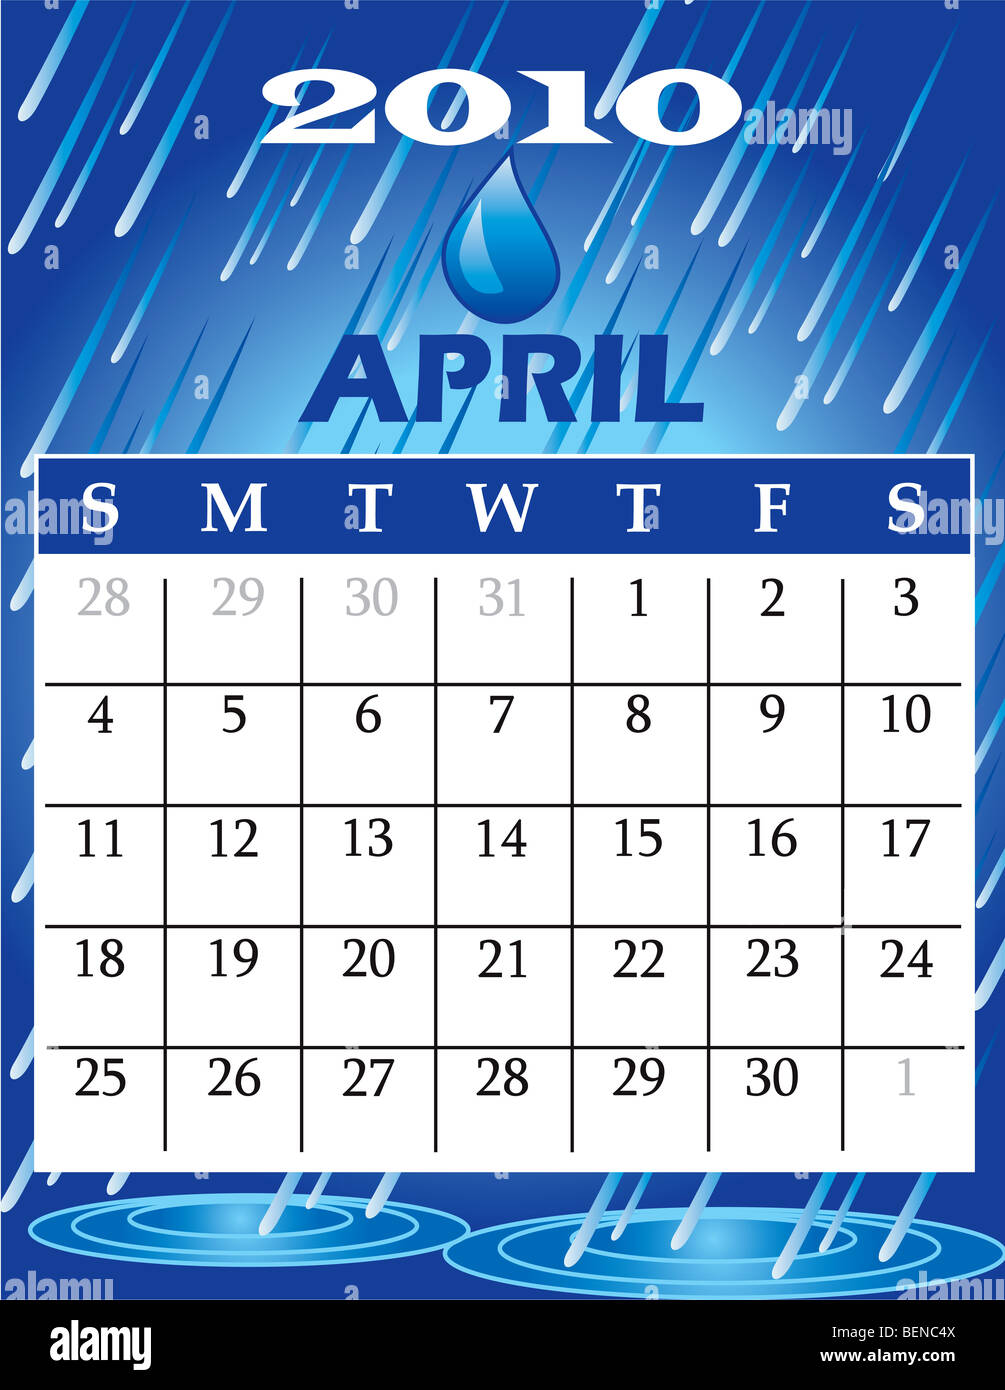 2010 April Calendar Stock Photo